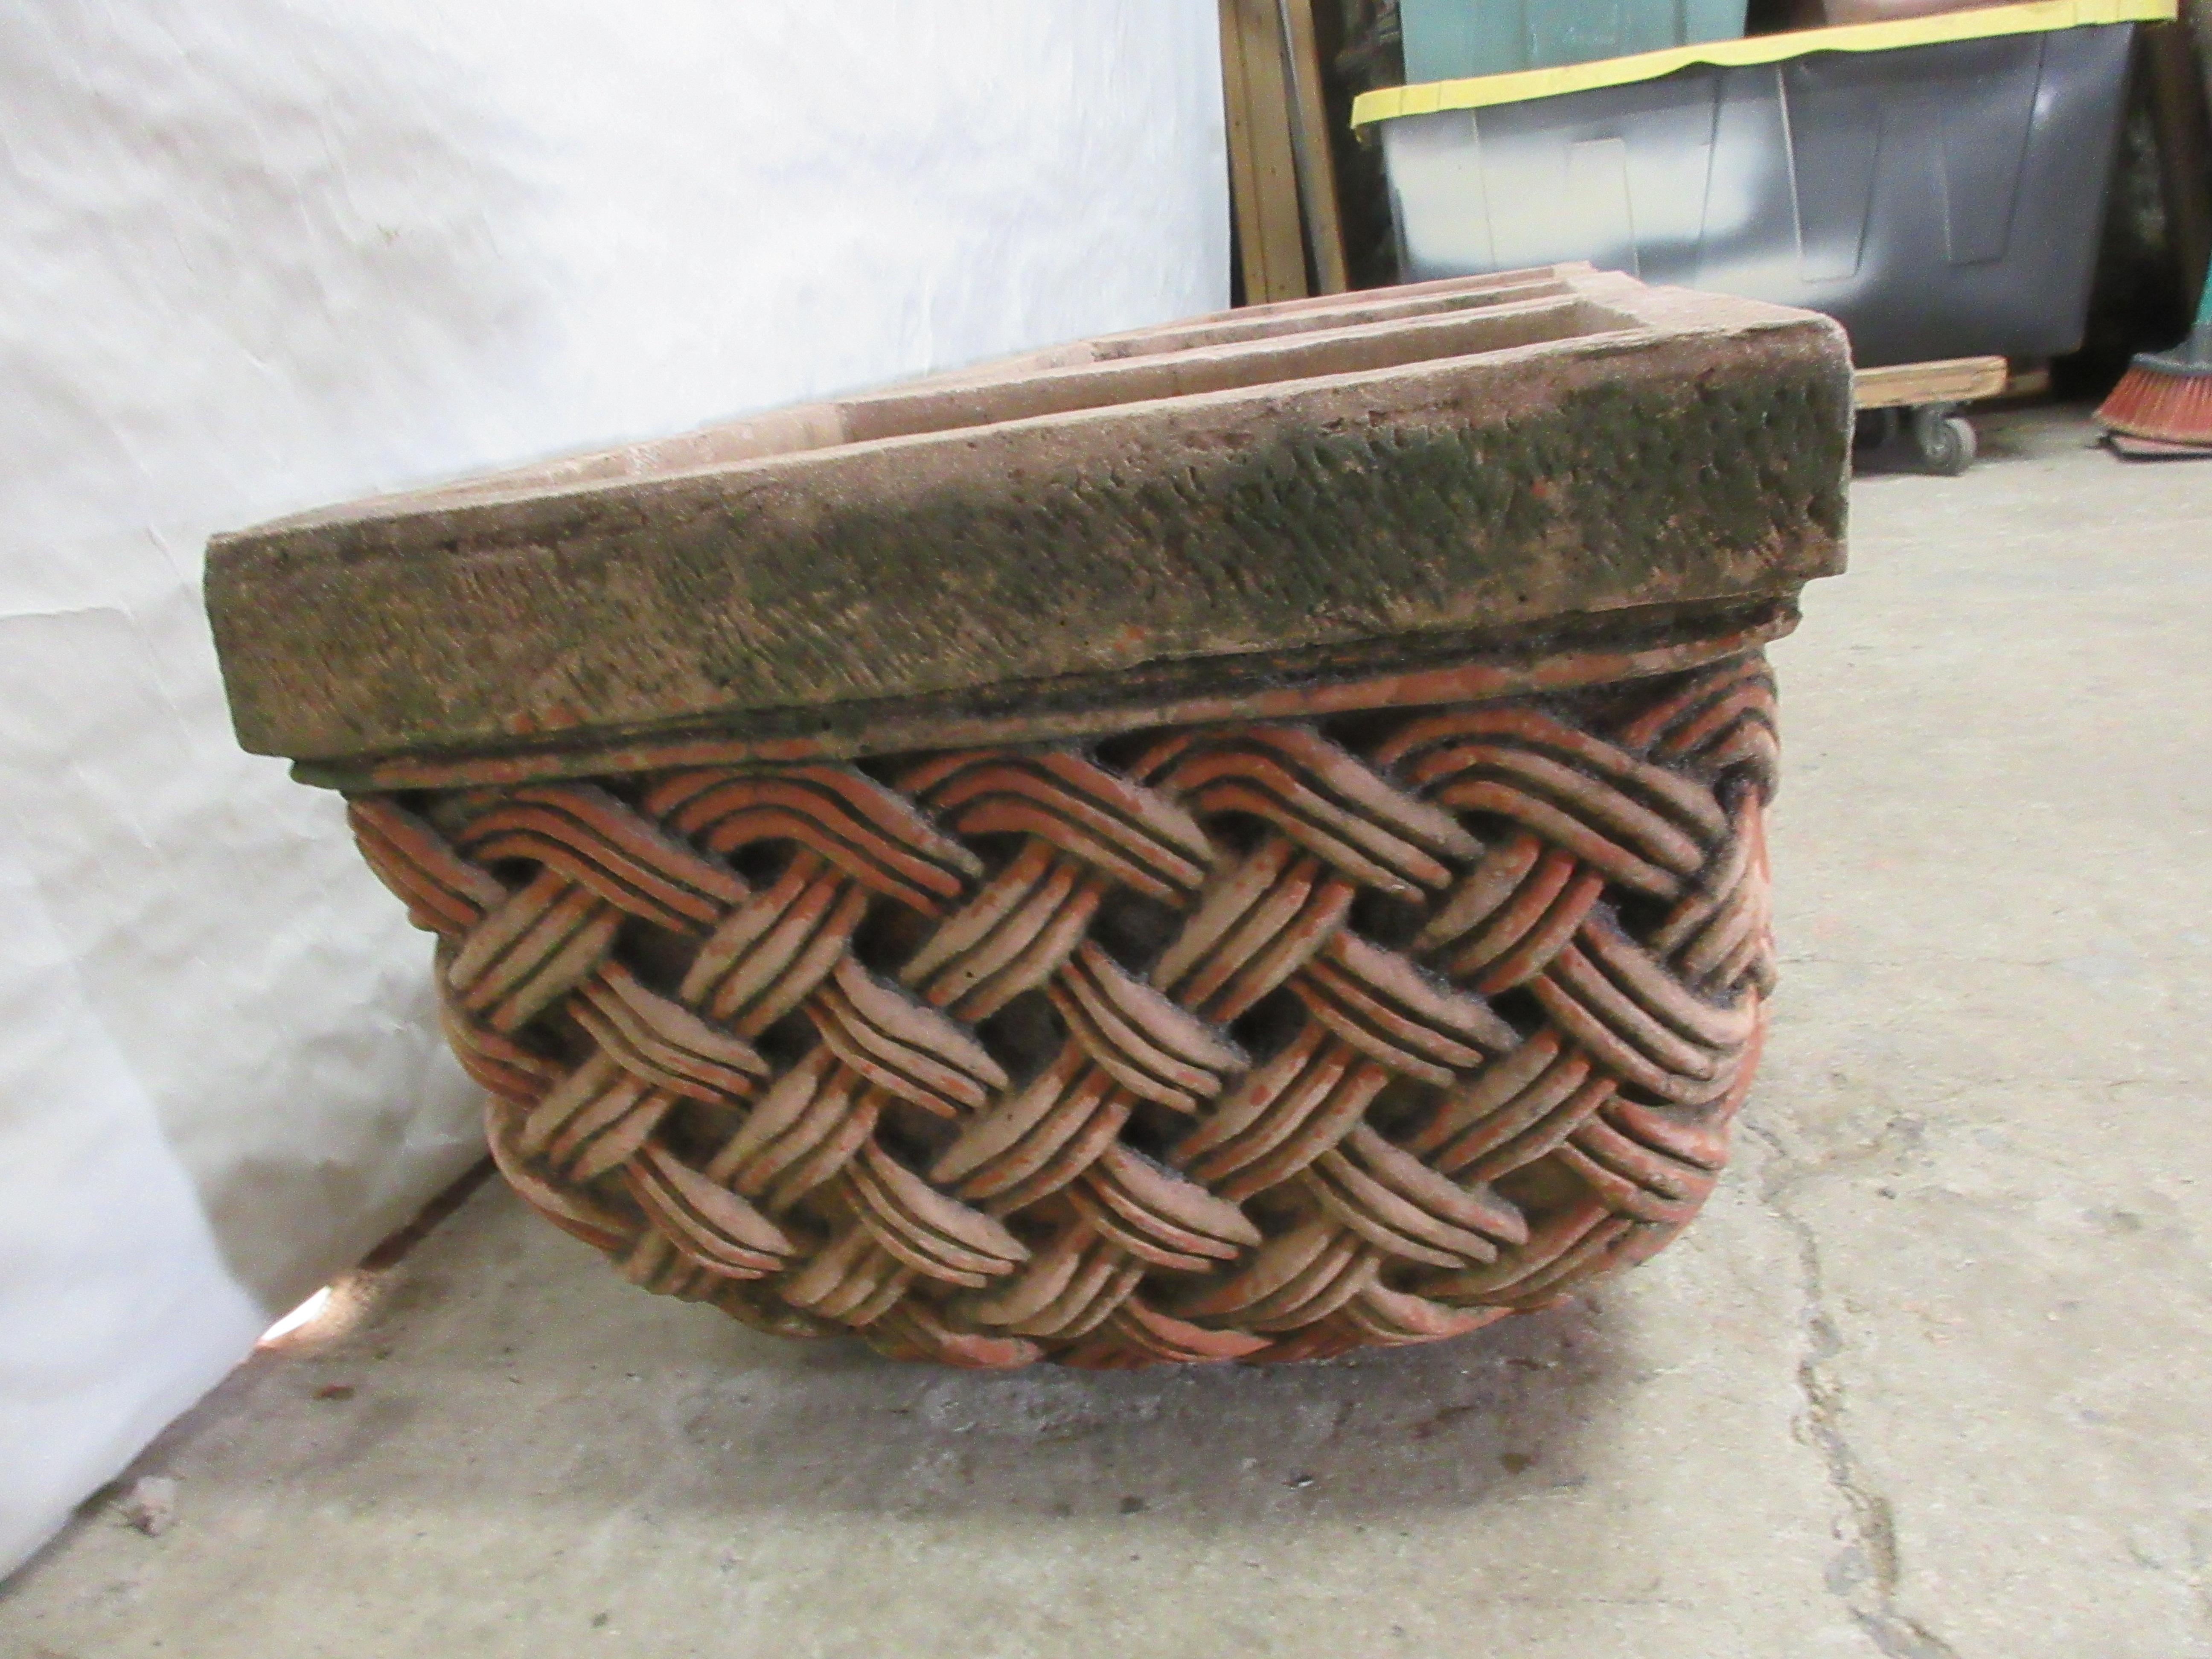 Concrete 3 Basket Weave Planters For Sale